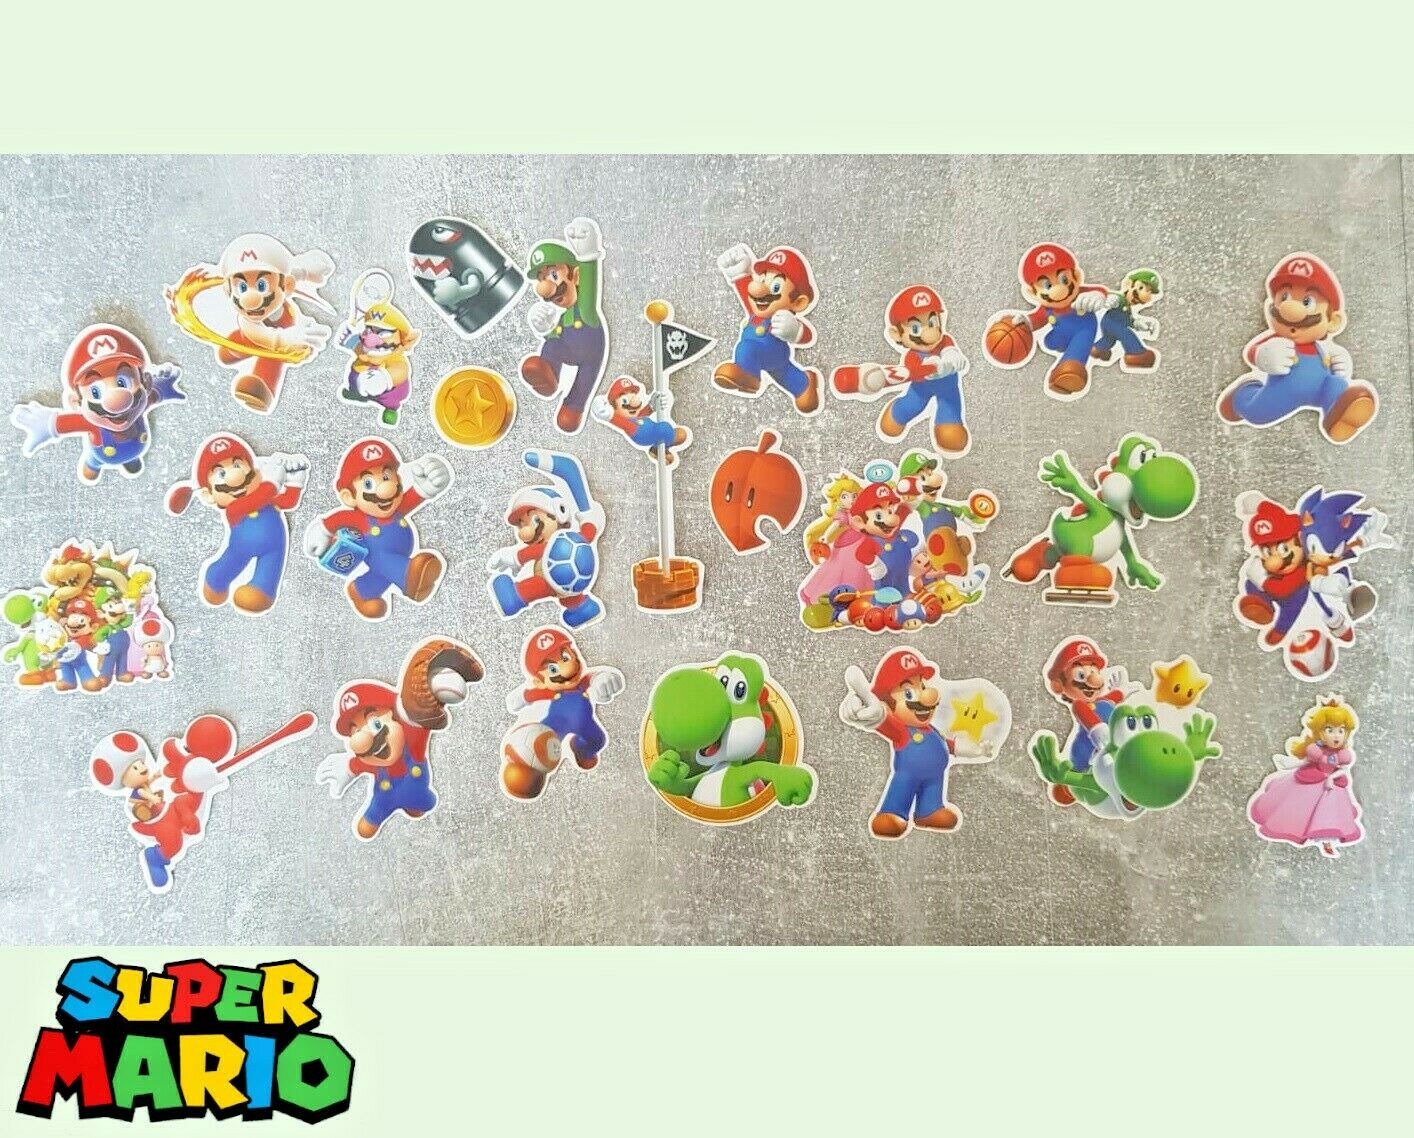 26 Stk. Super Mario 3D Sticker Aufkleber Nintendo ab Größe 6 cm 🍄🎯